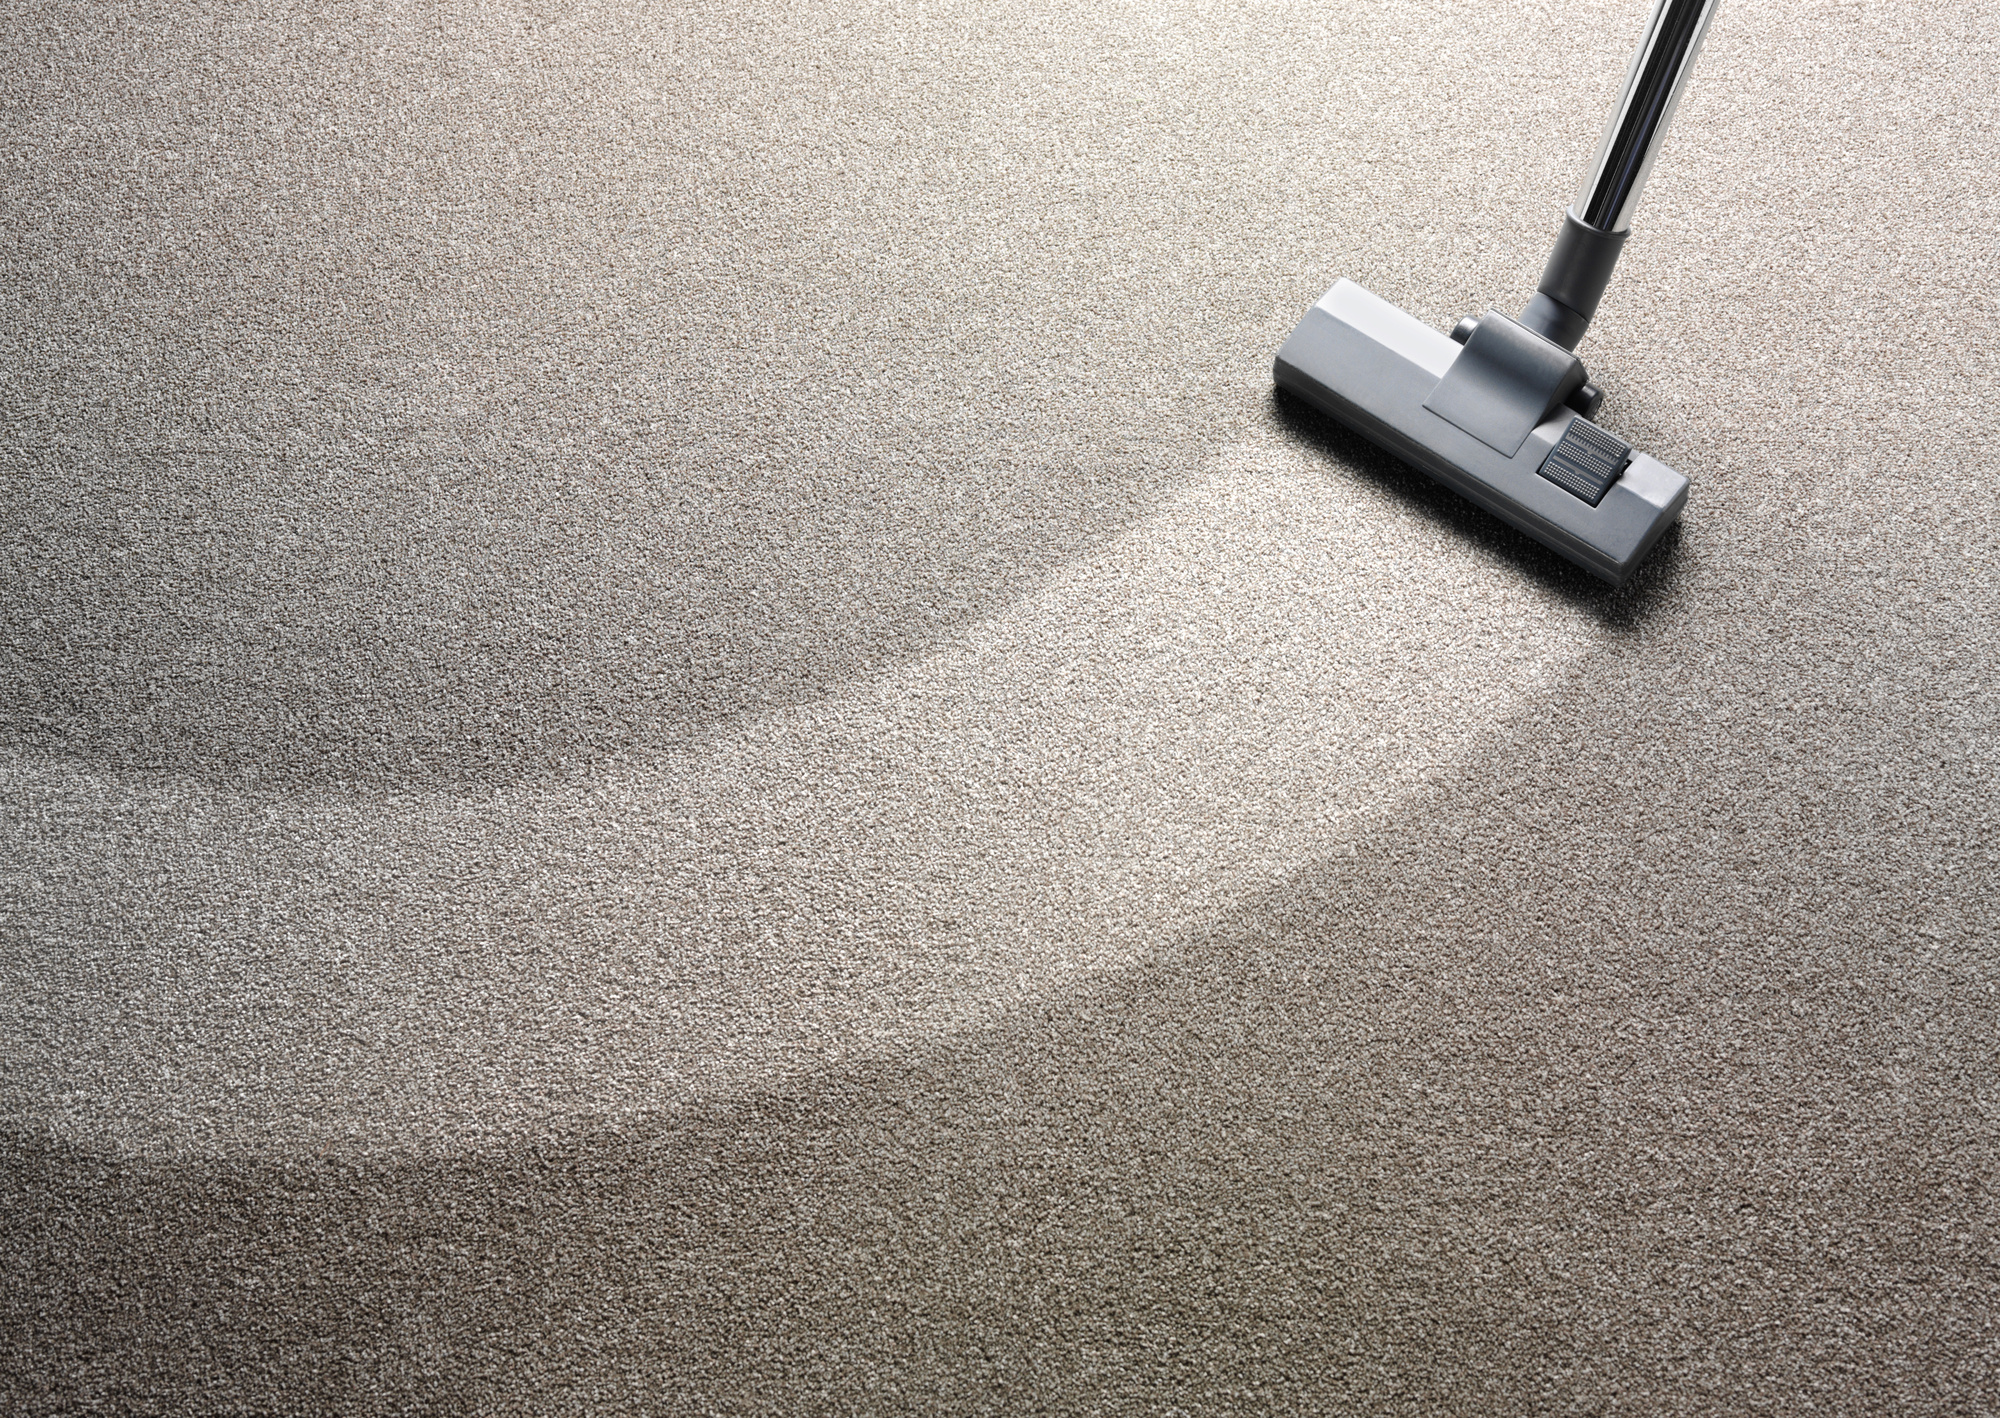 carpet deodorisation
